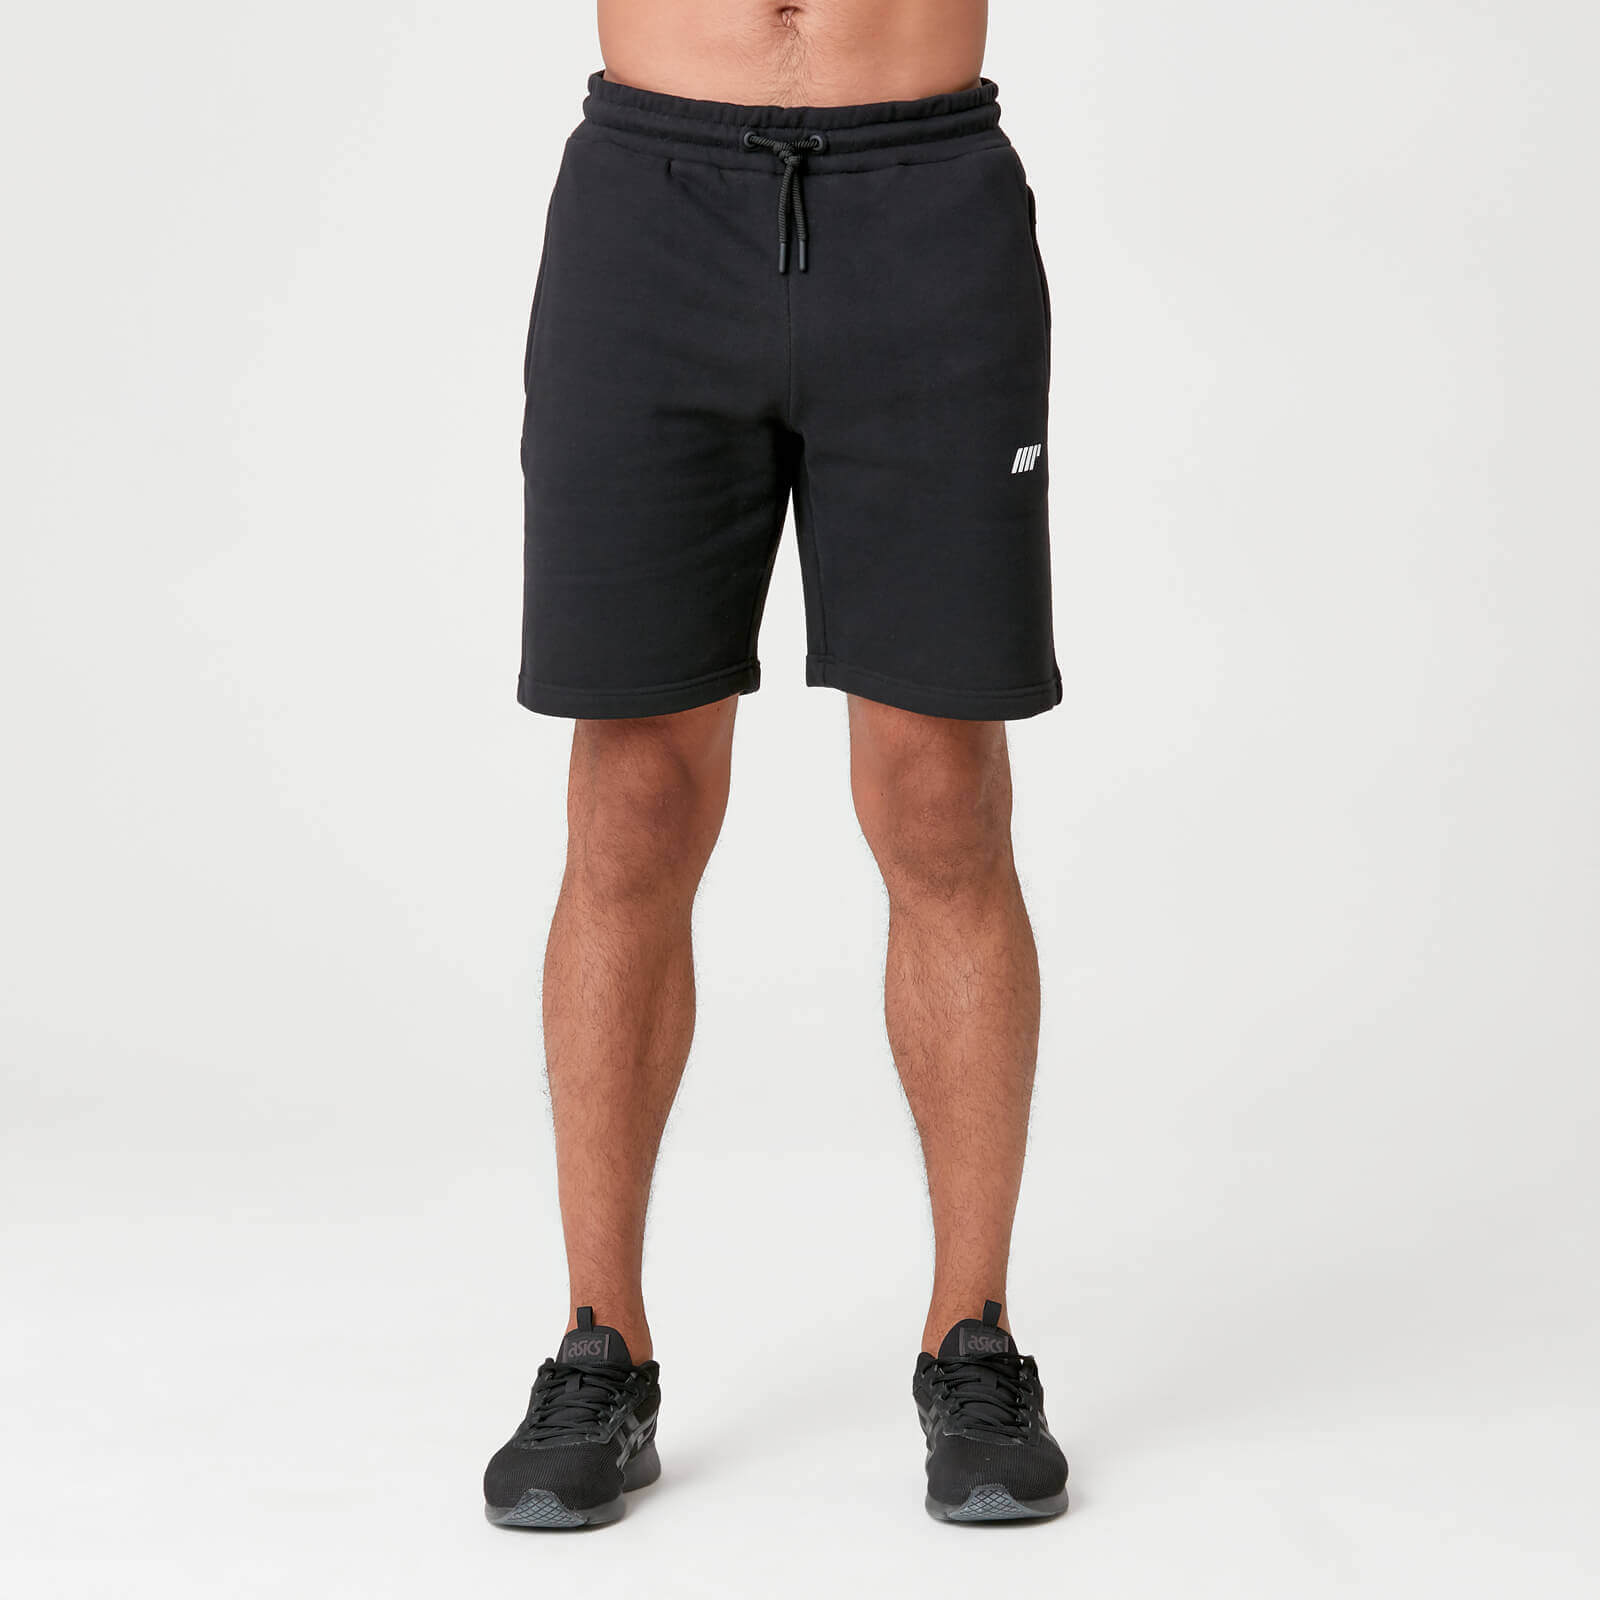 Myprotein Tru-Fit Sweat Shorts - Black